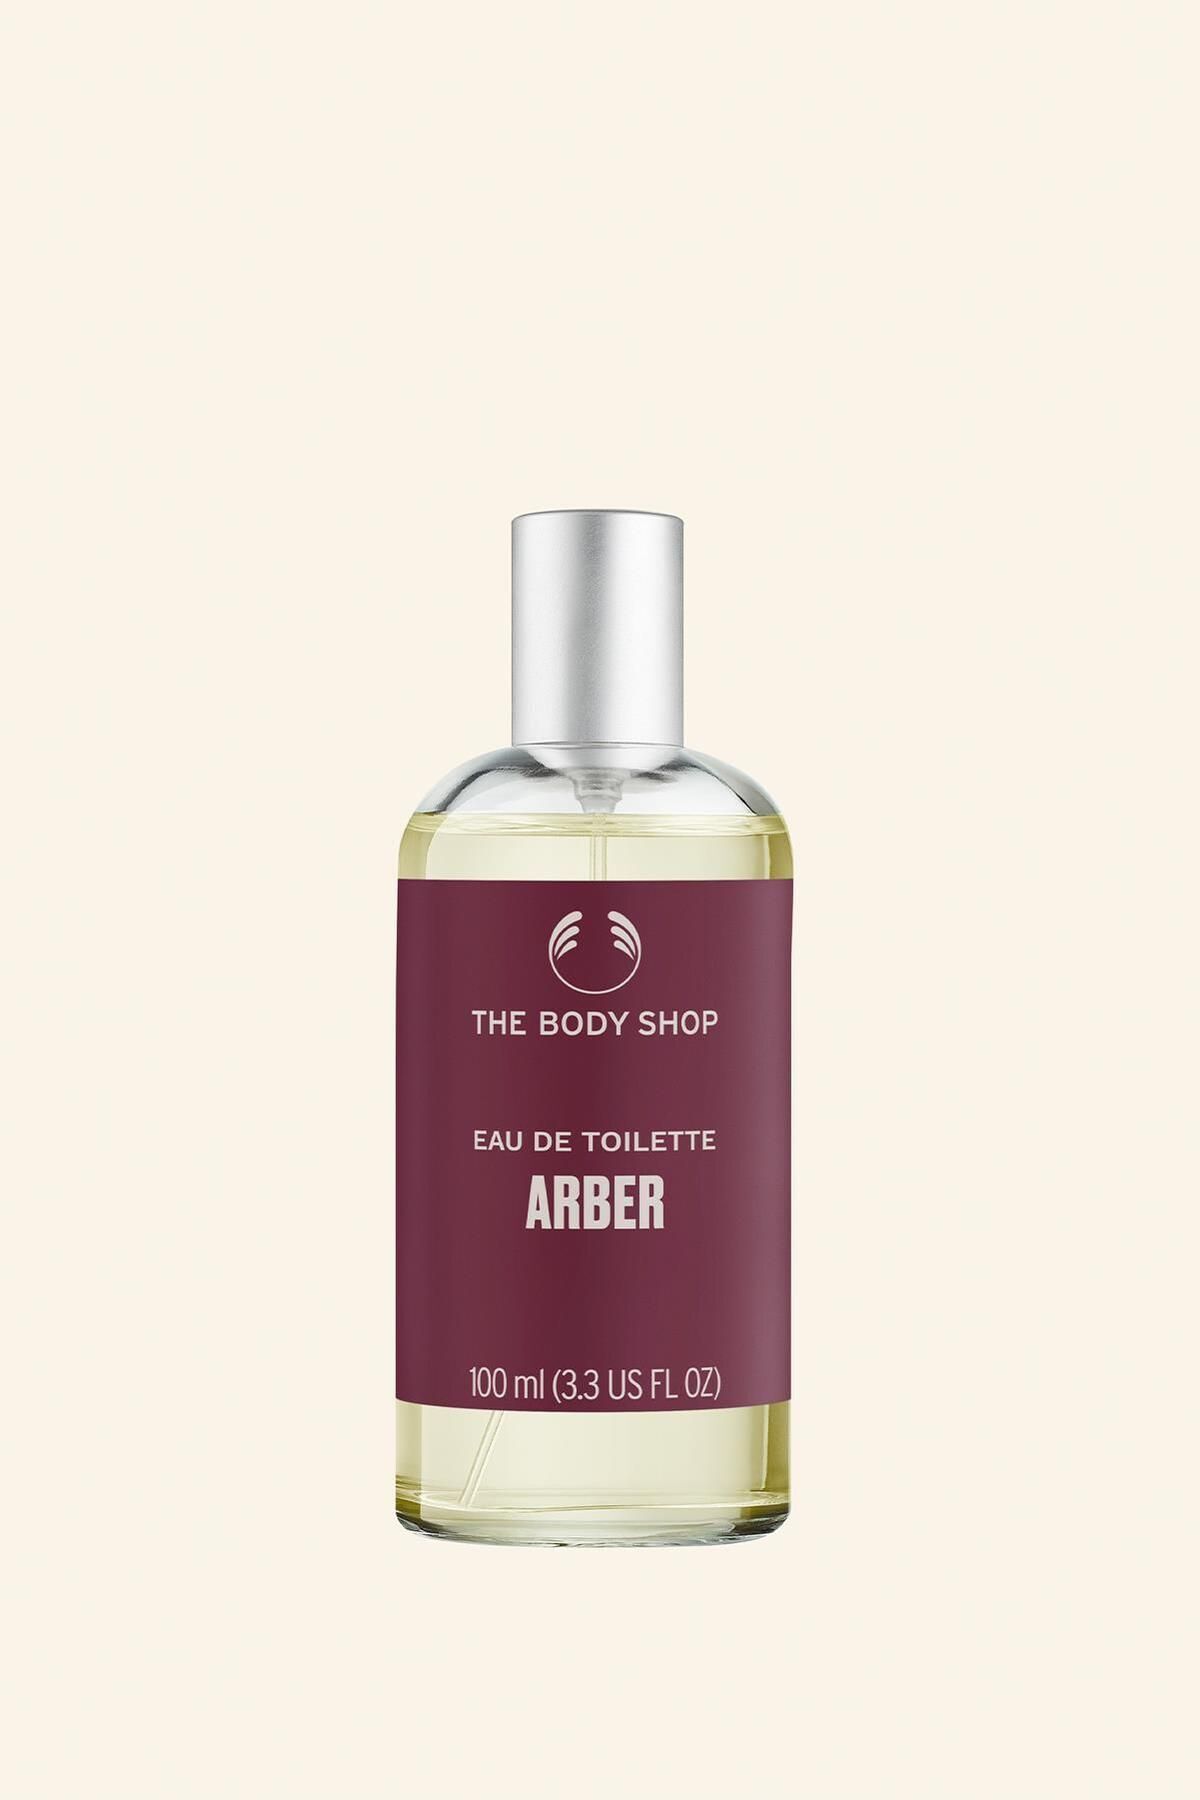 THE BODY SHOP Arber Eau De Toilette 100 ml